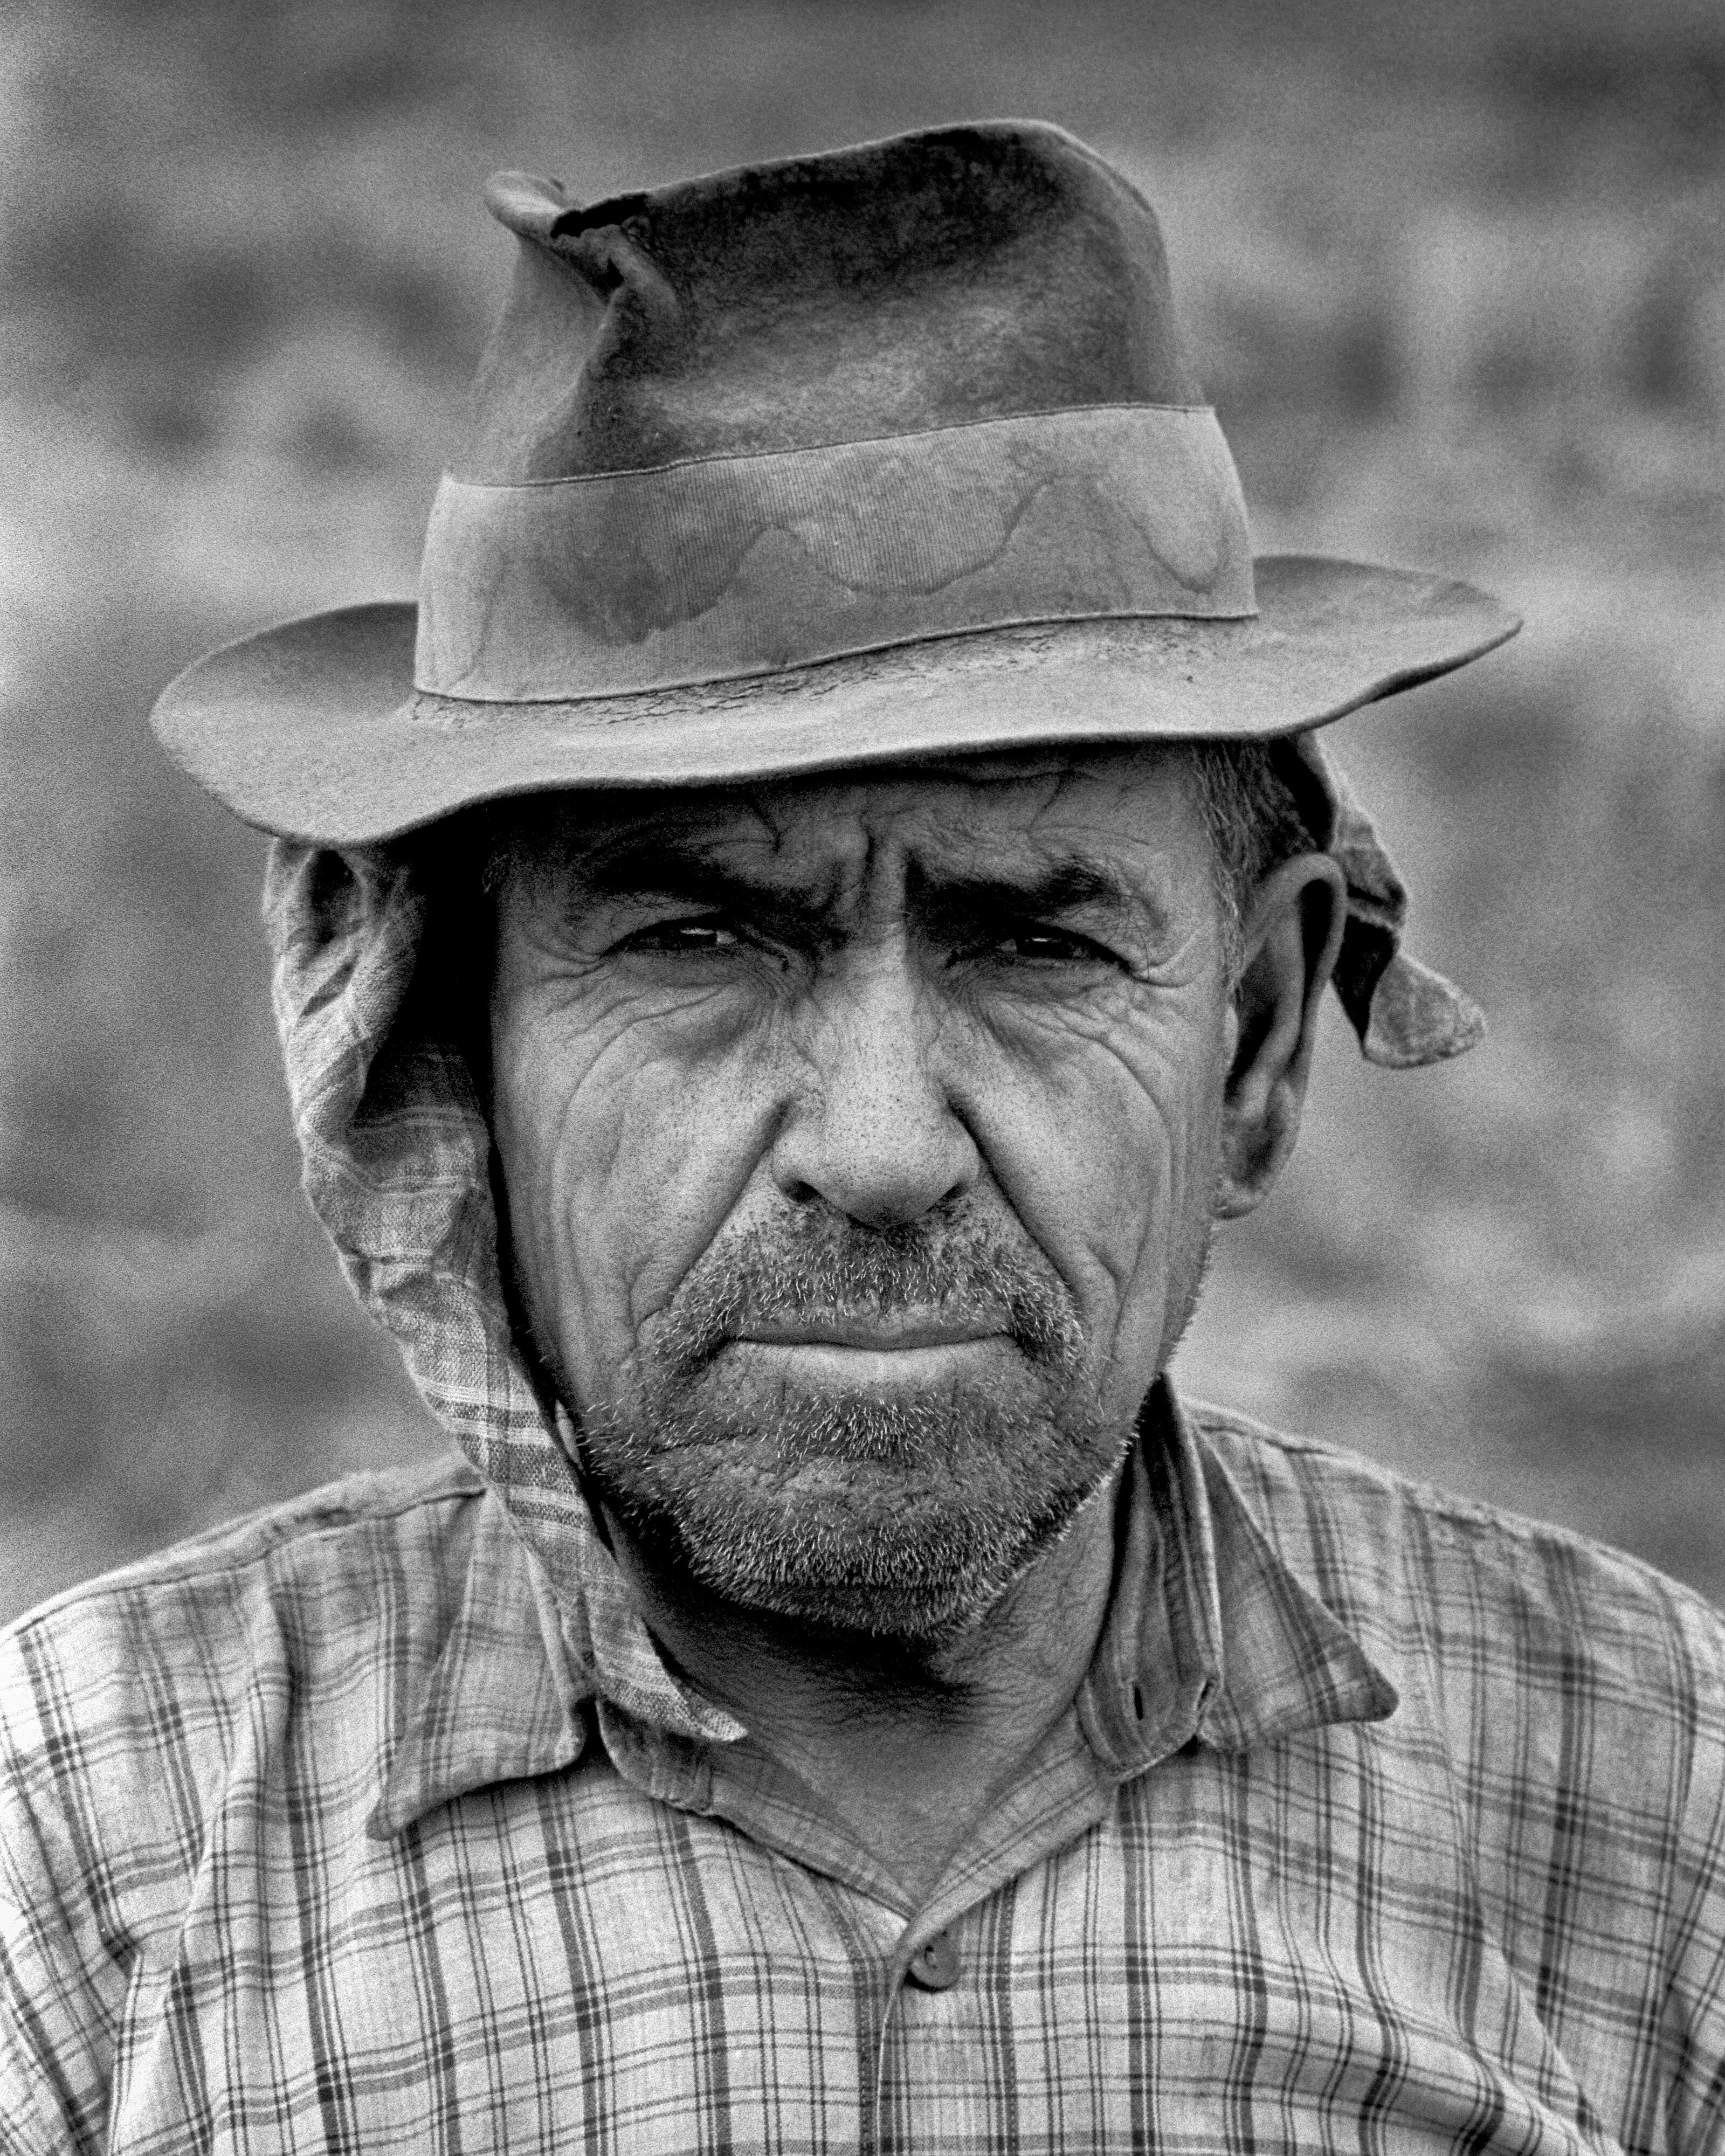 Un jornalero del campo posa para el fotógrafo en la localidad de Évora, en la región del Alentejo.